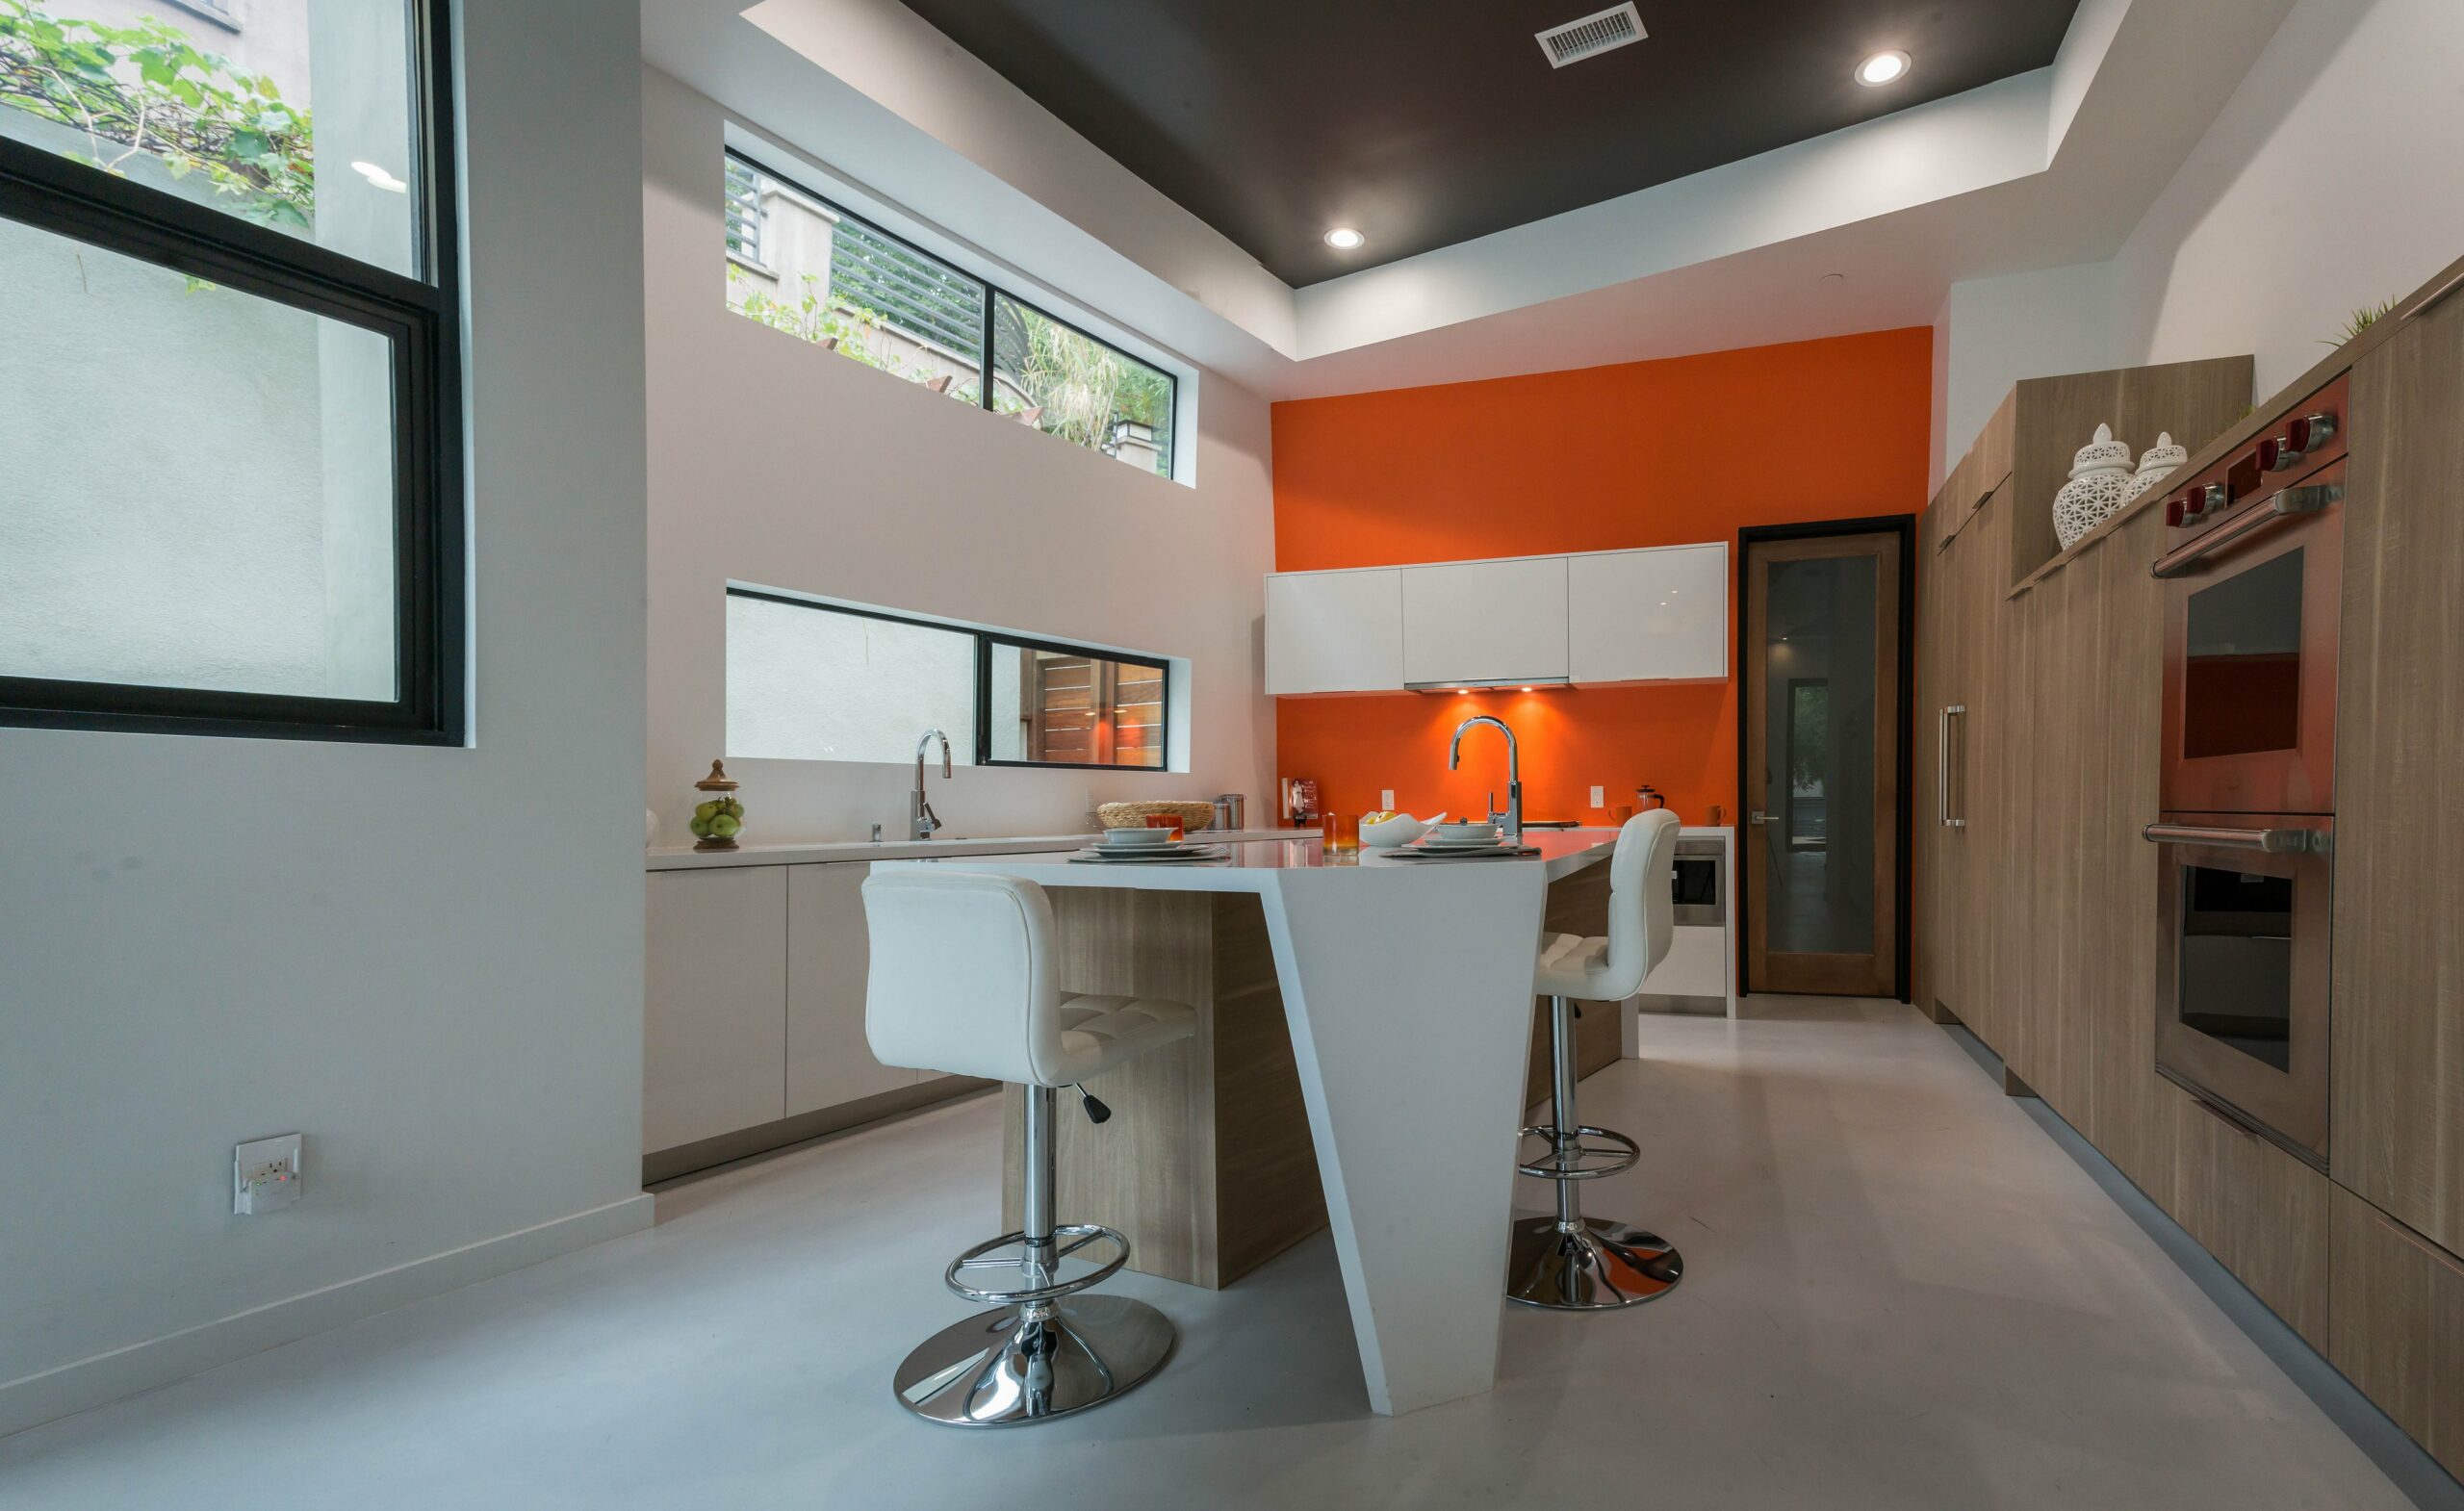 Modern kitchen interior with orange accent wall.